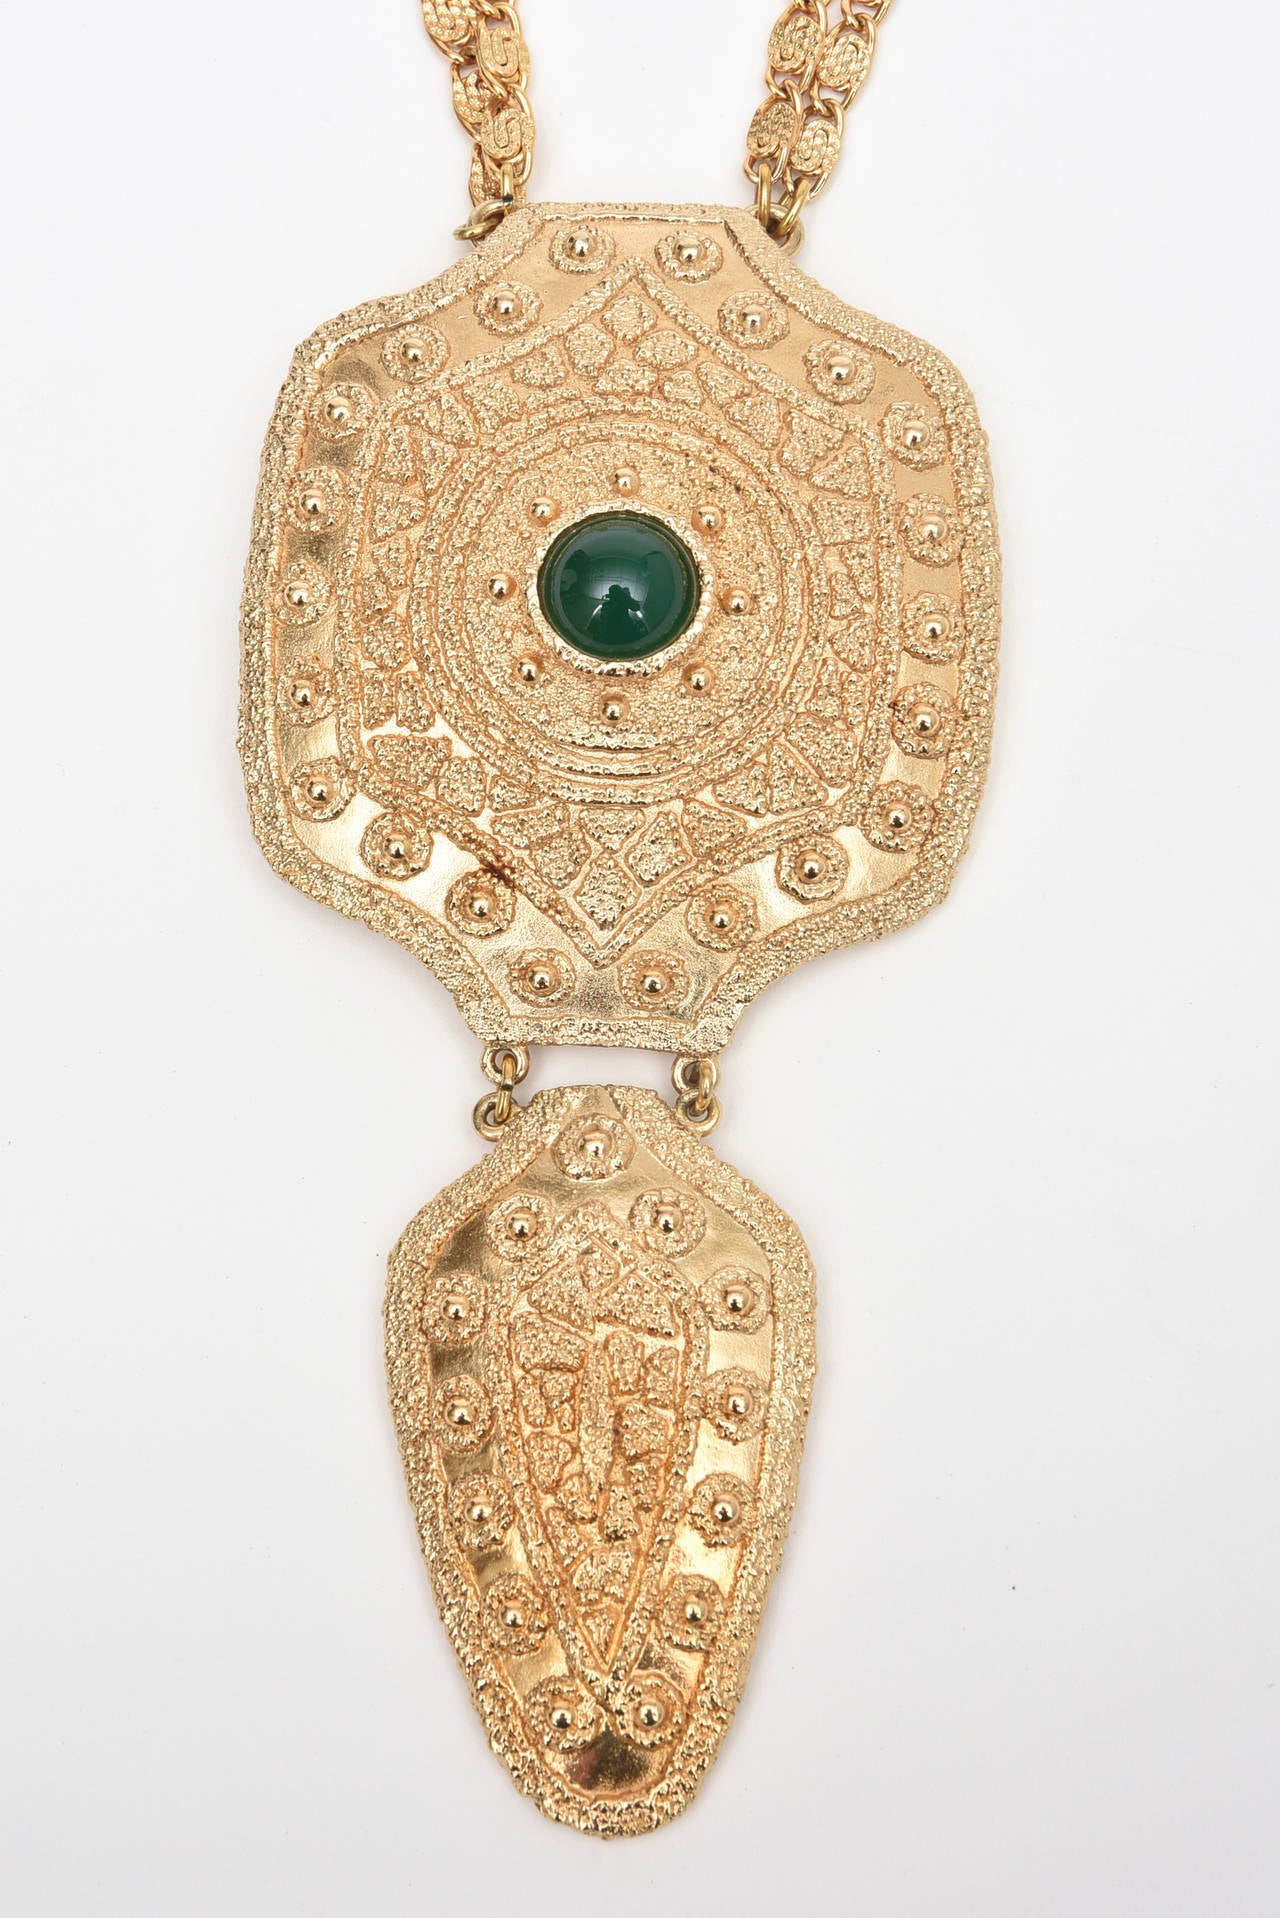 Der geschmolzene Look des vergoldeten Teils dieser fabelhaften, signierten Napier-Halskette aus den 1970er Jahren ist sehr skulptural. Es hat einen dramatischen Look mit einem grünen Glasstein in der Mitte, der an einen Krieger im ägyptischen